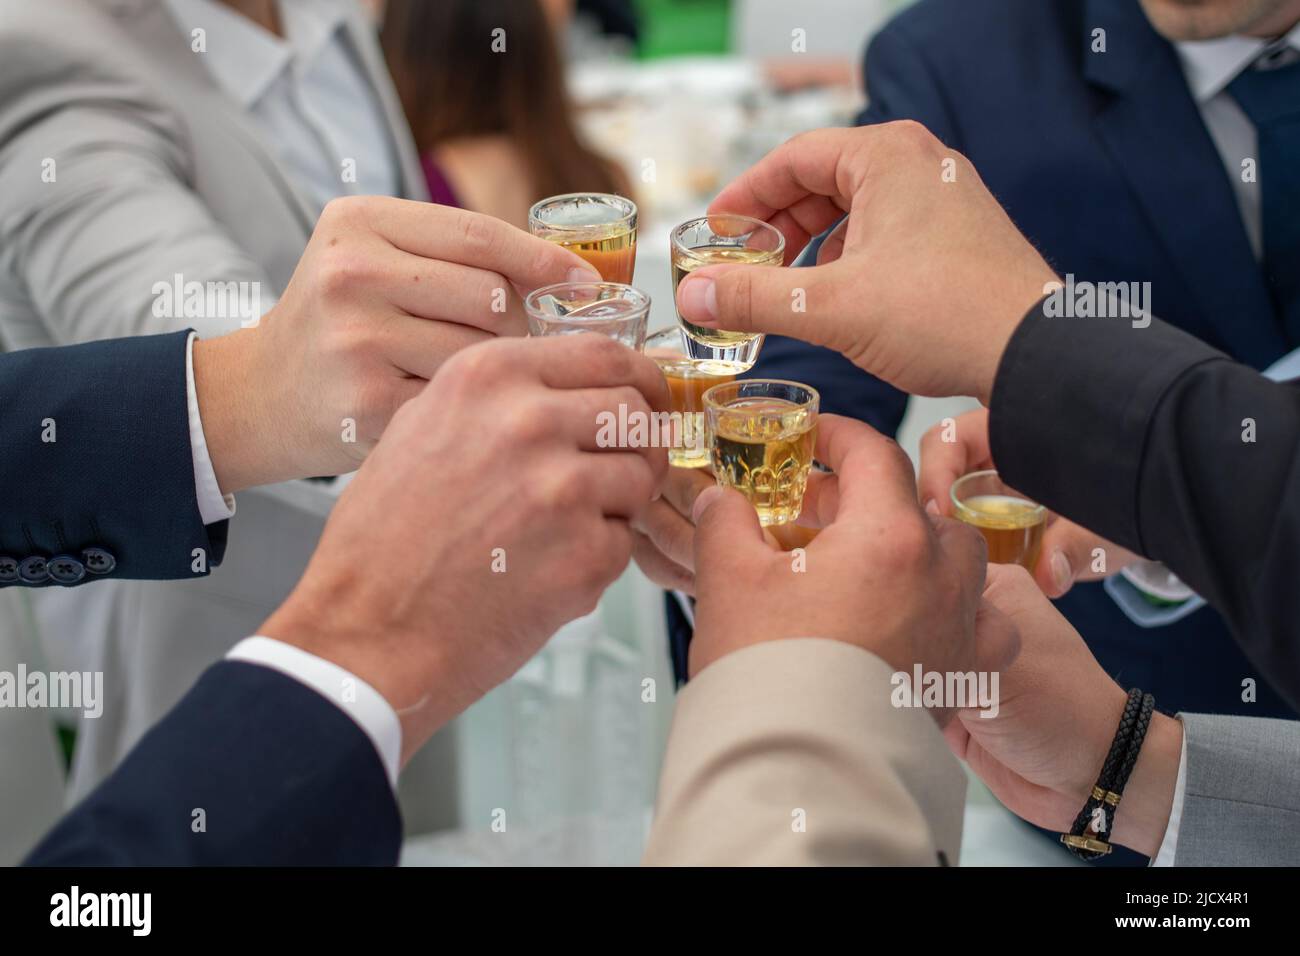 Les amis célèbrent avec rakia brandy lors d'un mariage serbe. Gros plan sur les mains Banque D'Images